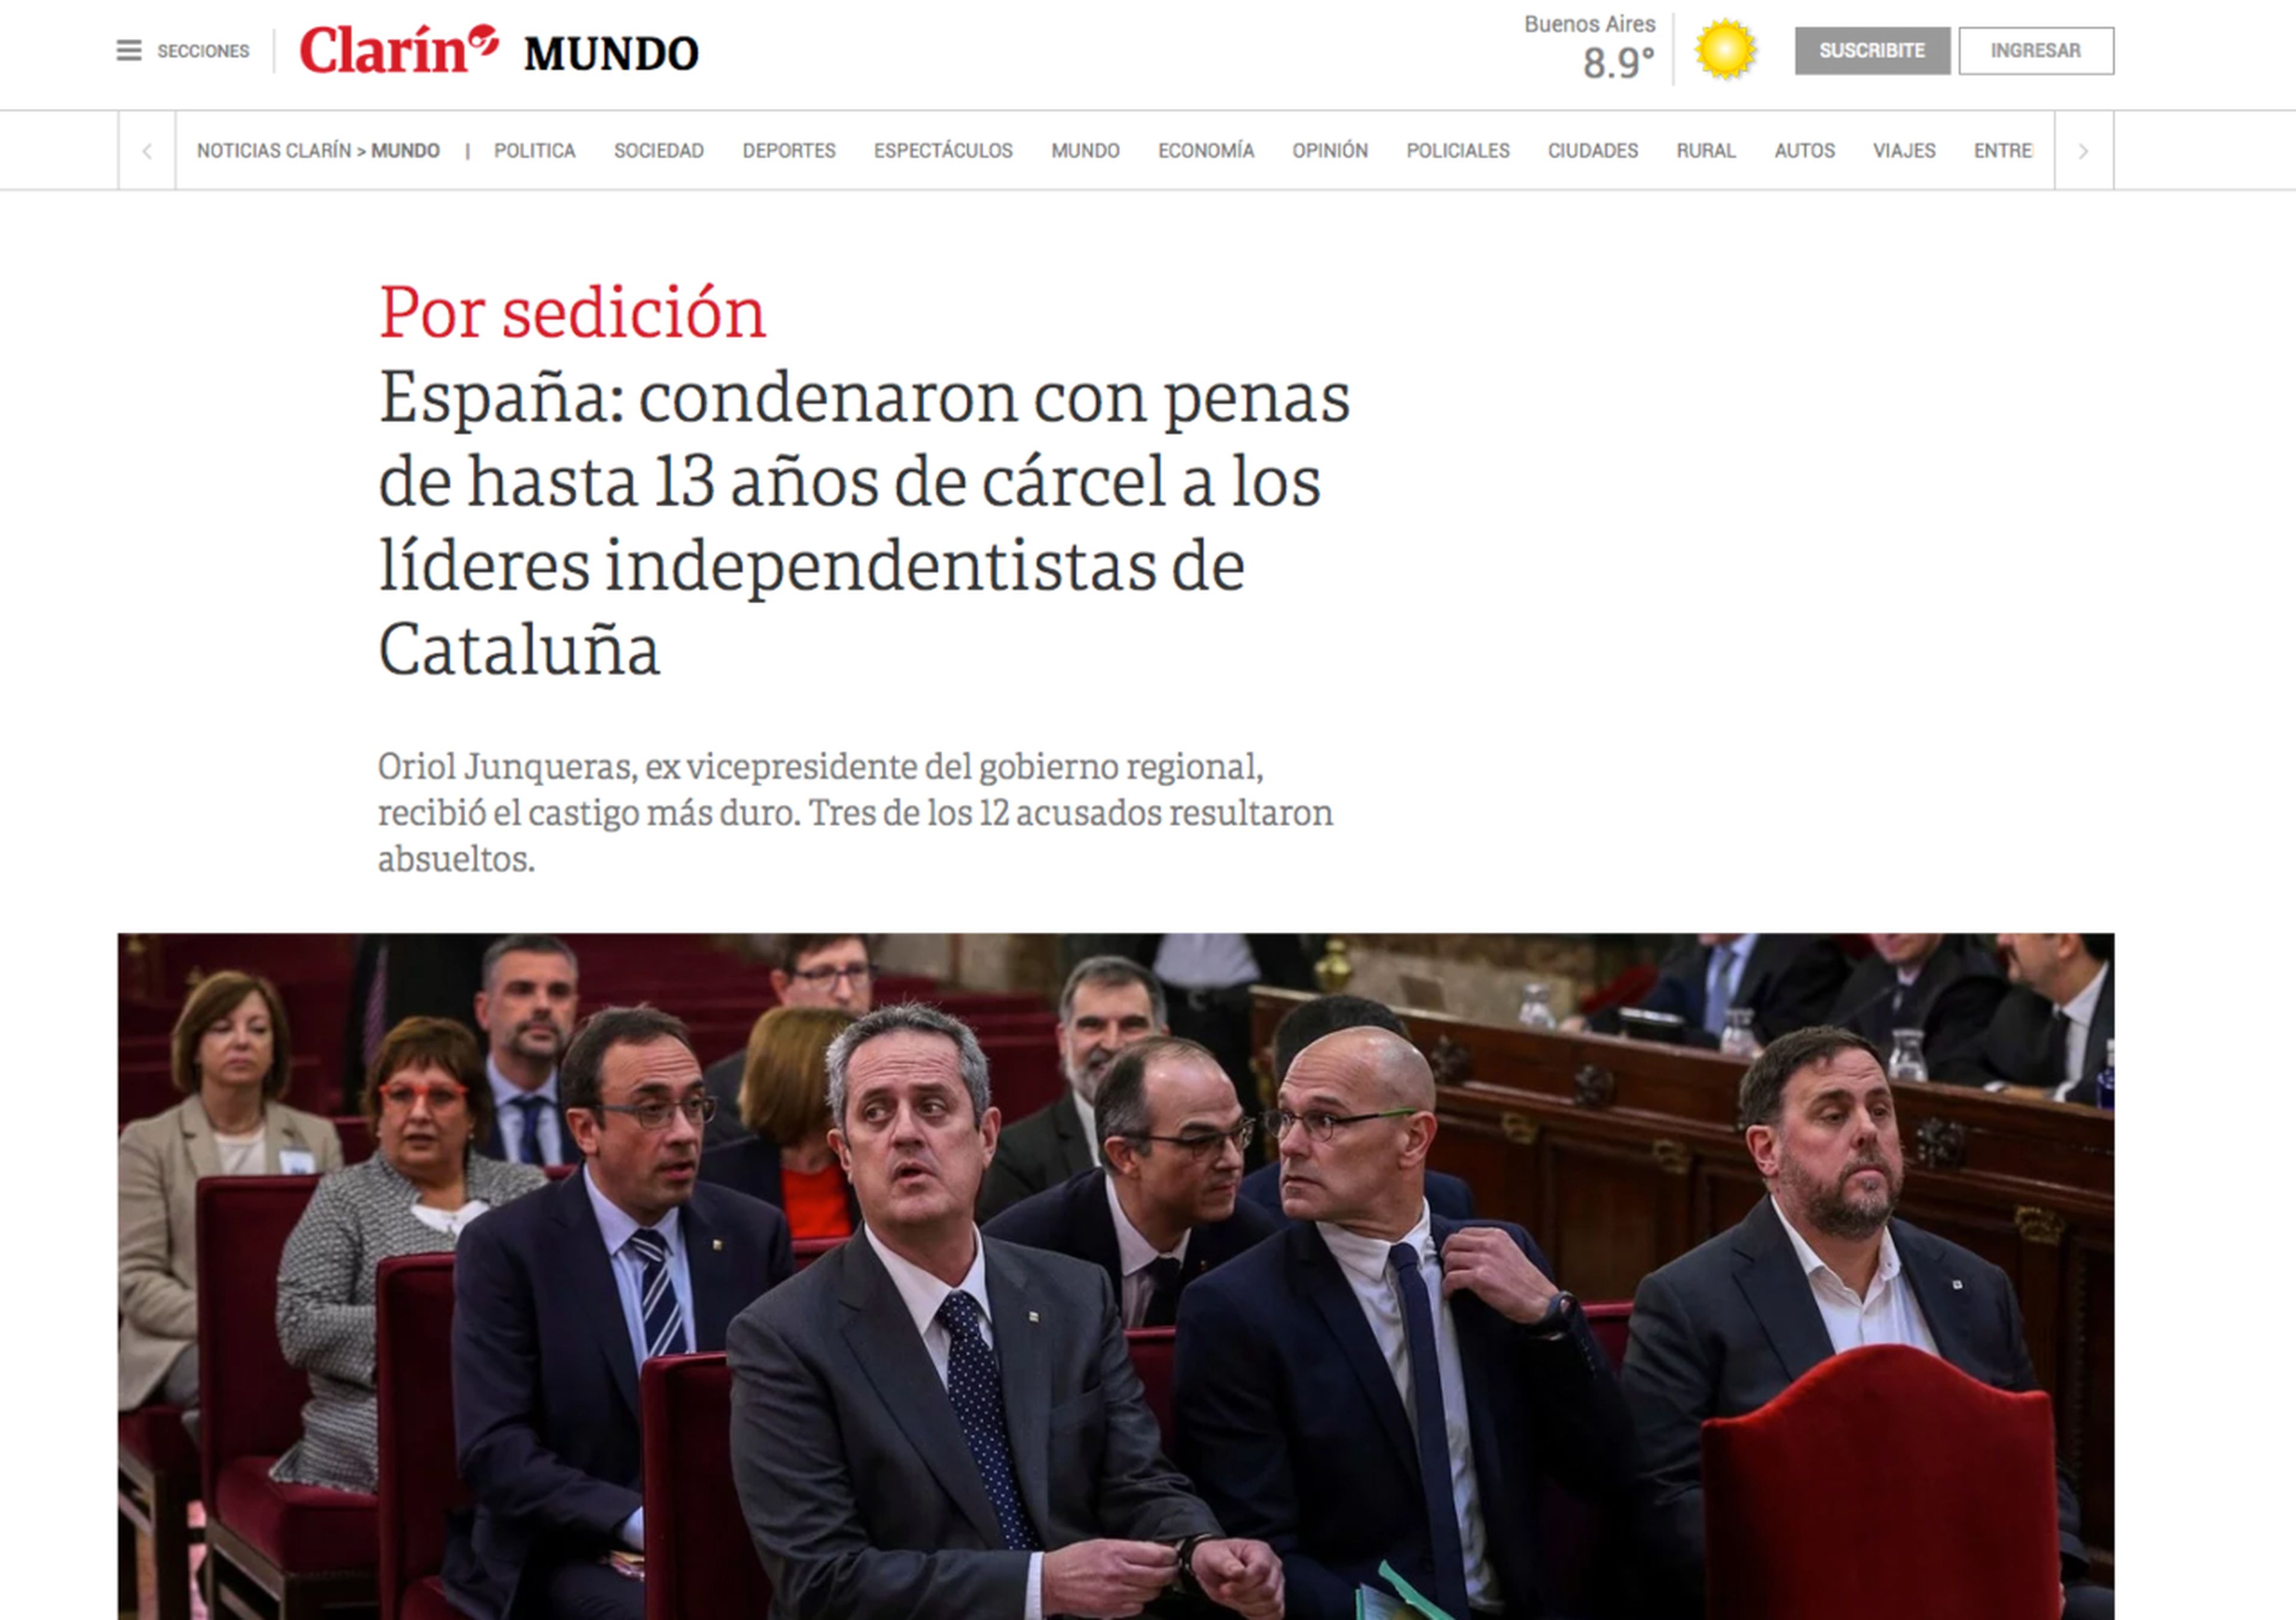 Noticia de Clarín sobre la sentencia del procés